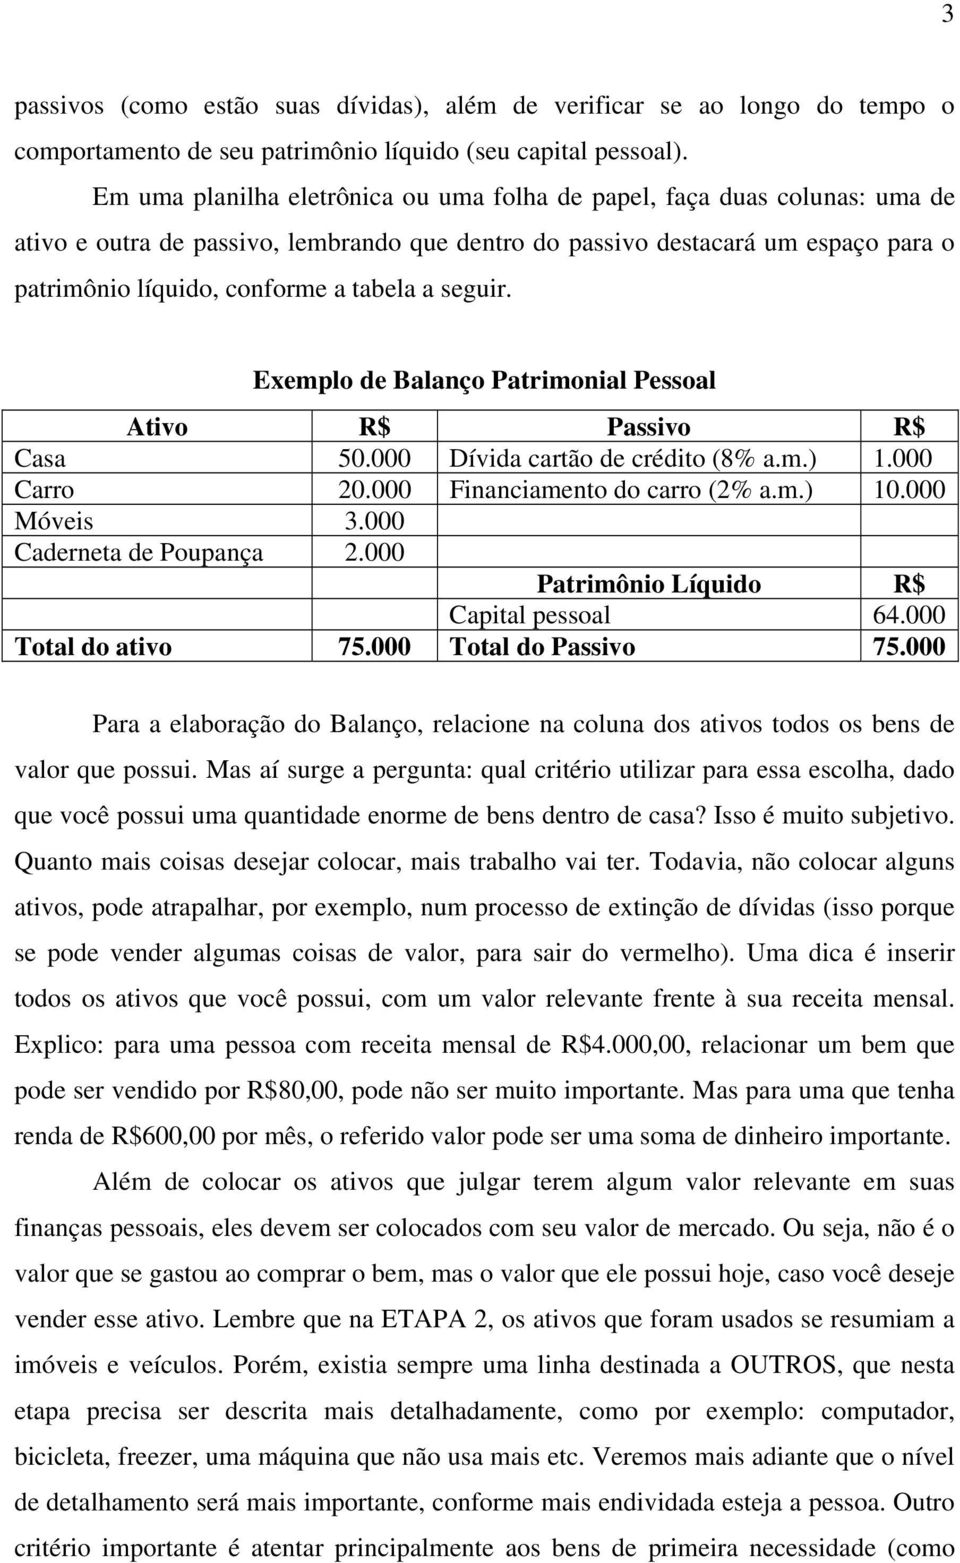 a seguir. Exemplo de Balanço Patrimonial Pessoal Ativo R$ Passivo R$ Casa 50.000 Dívida cartão de crédito (8% a.m.) 1.000 Carro 20.000 Financiamento do carro (2% a.m.) 10.000 Móveis 3.